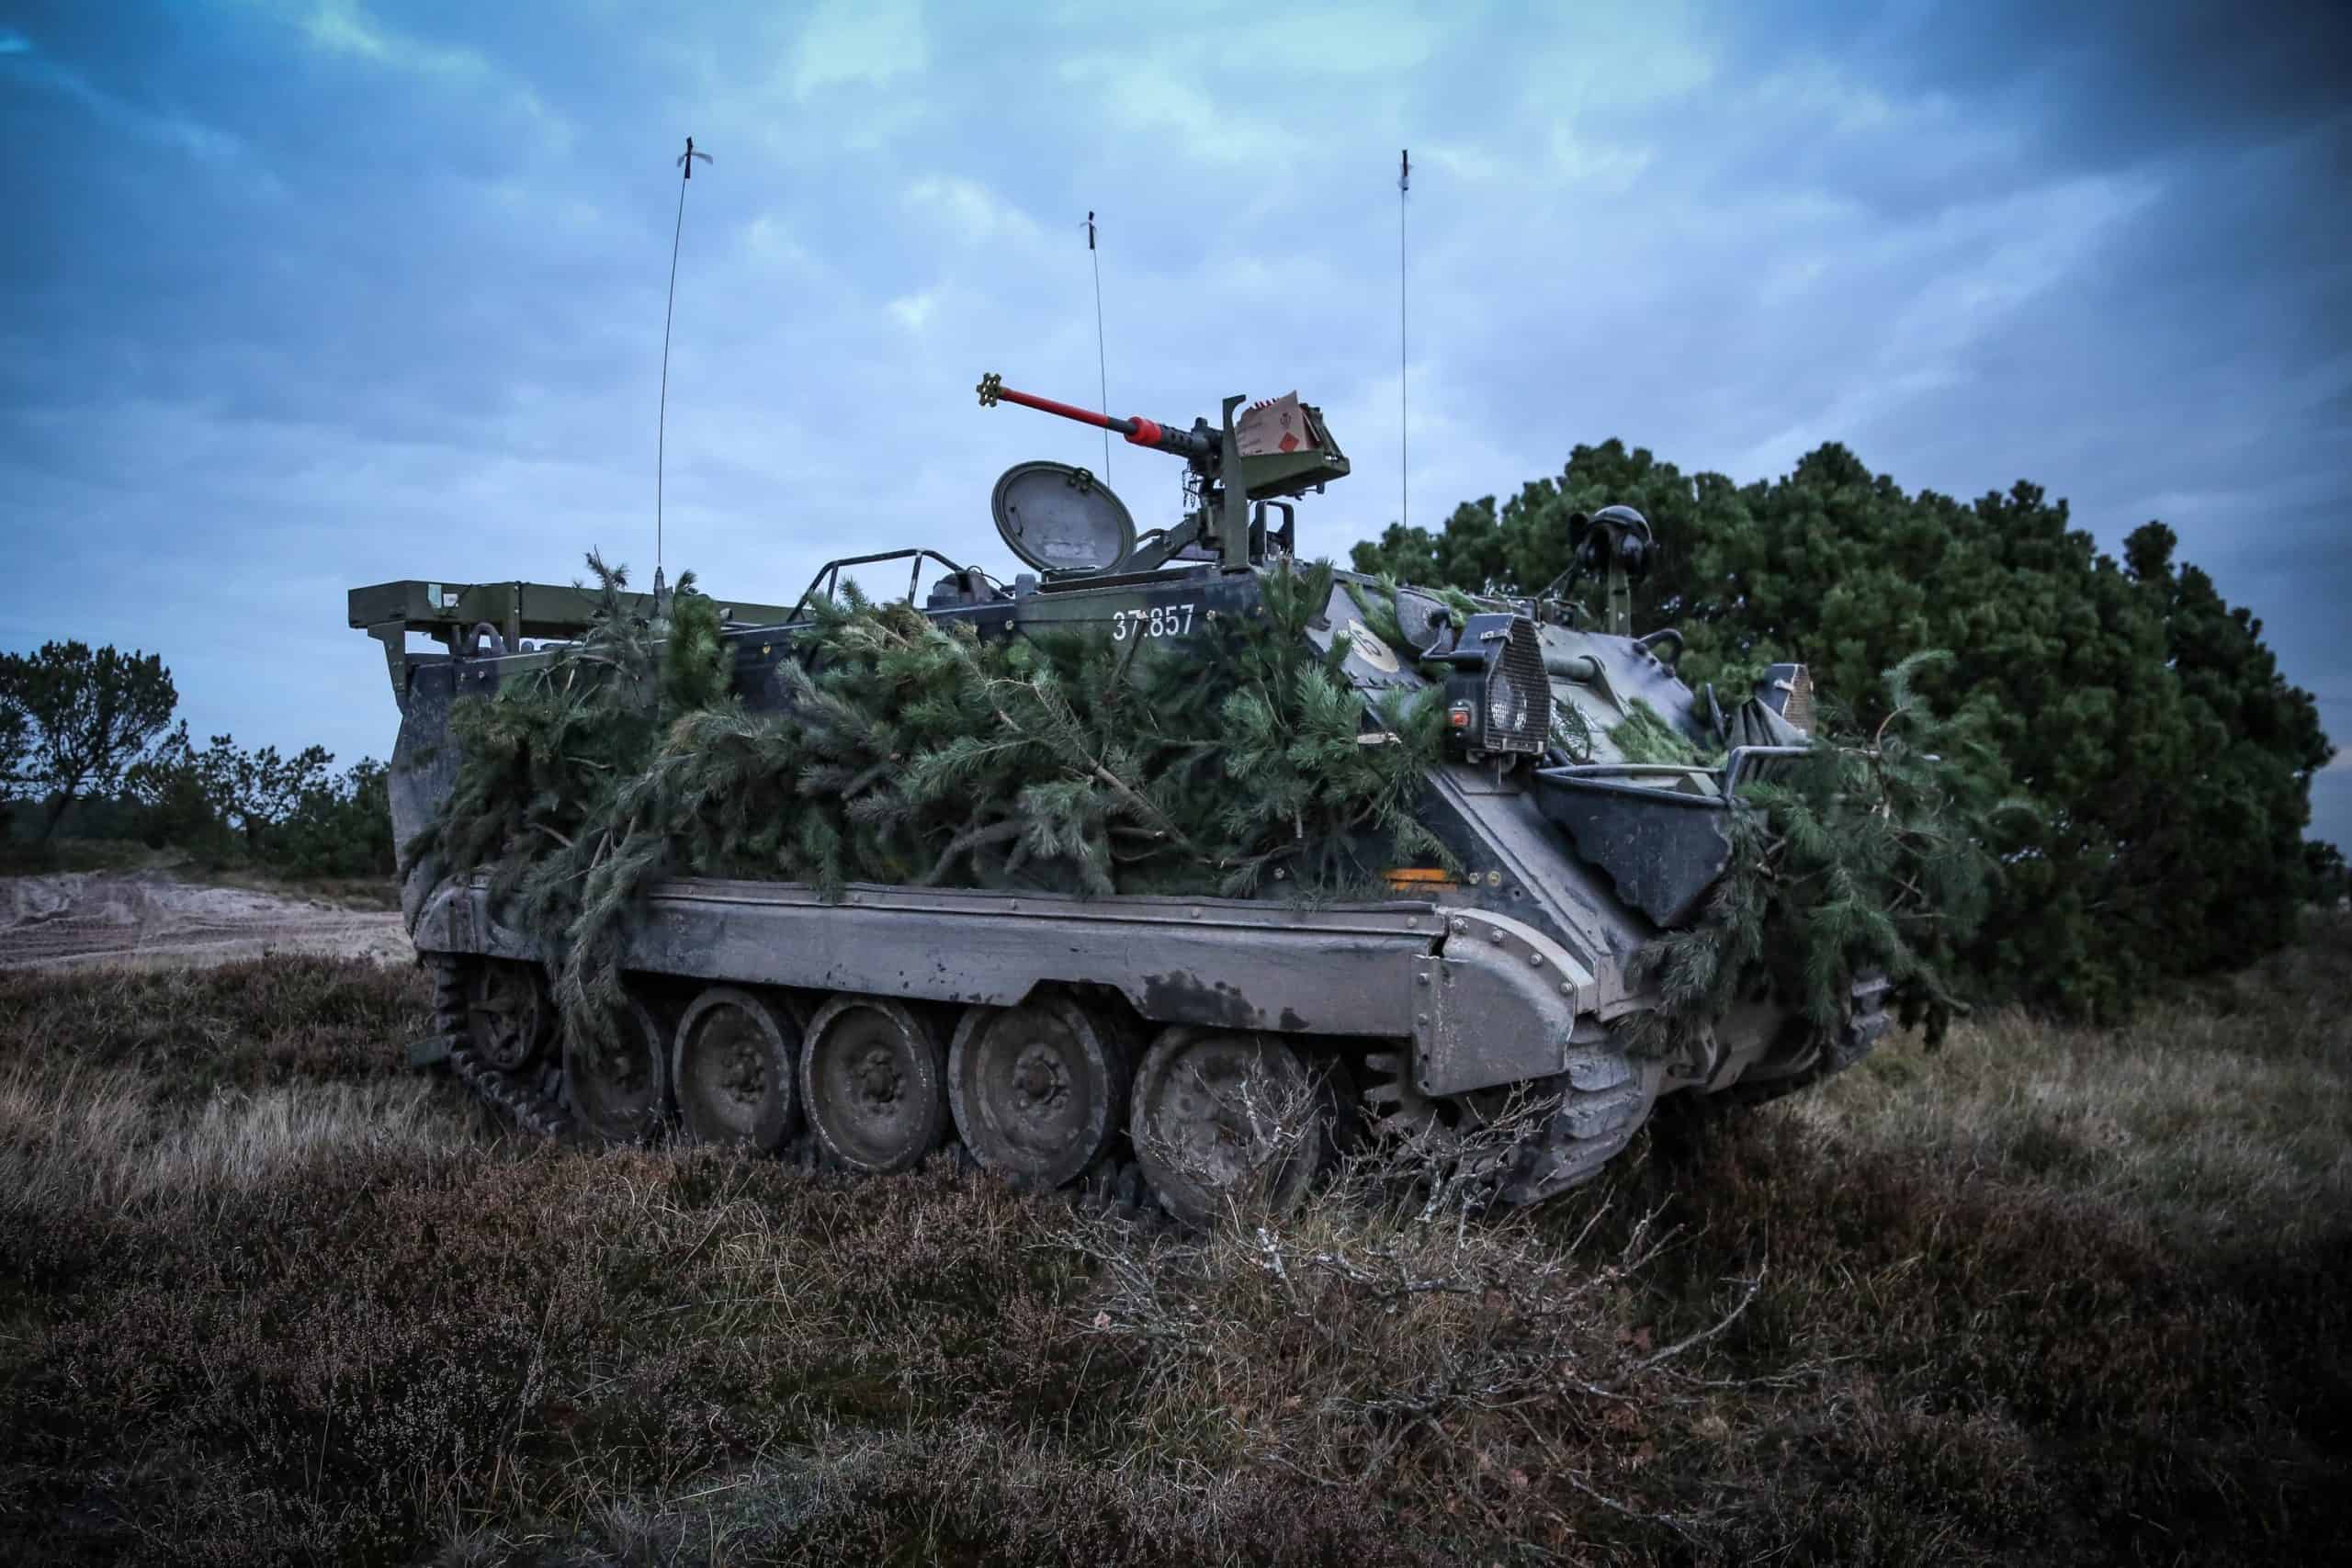 Гусеничний бронетранспортер M113 PMV датської армії